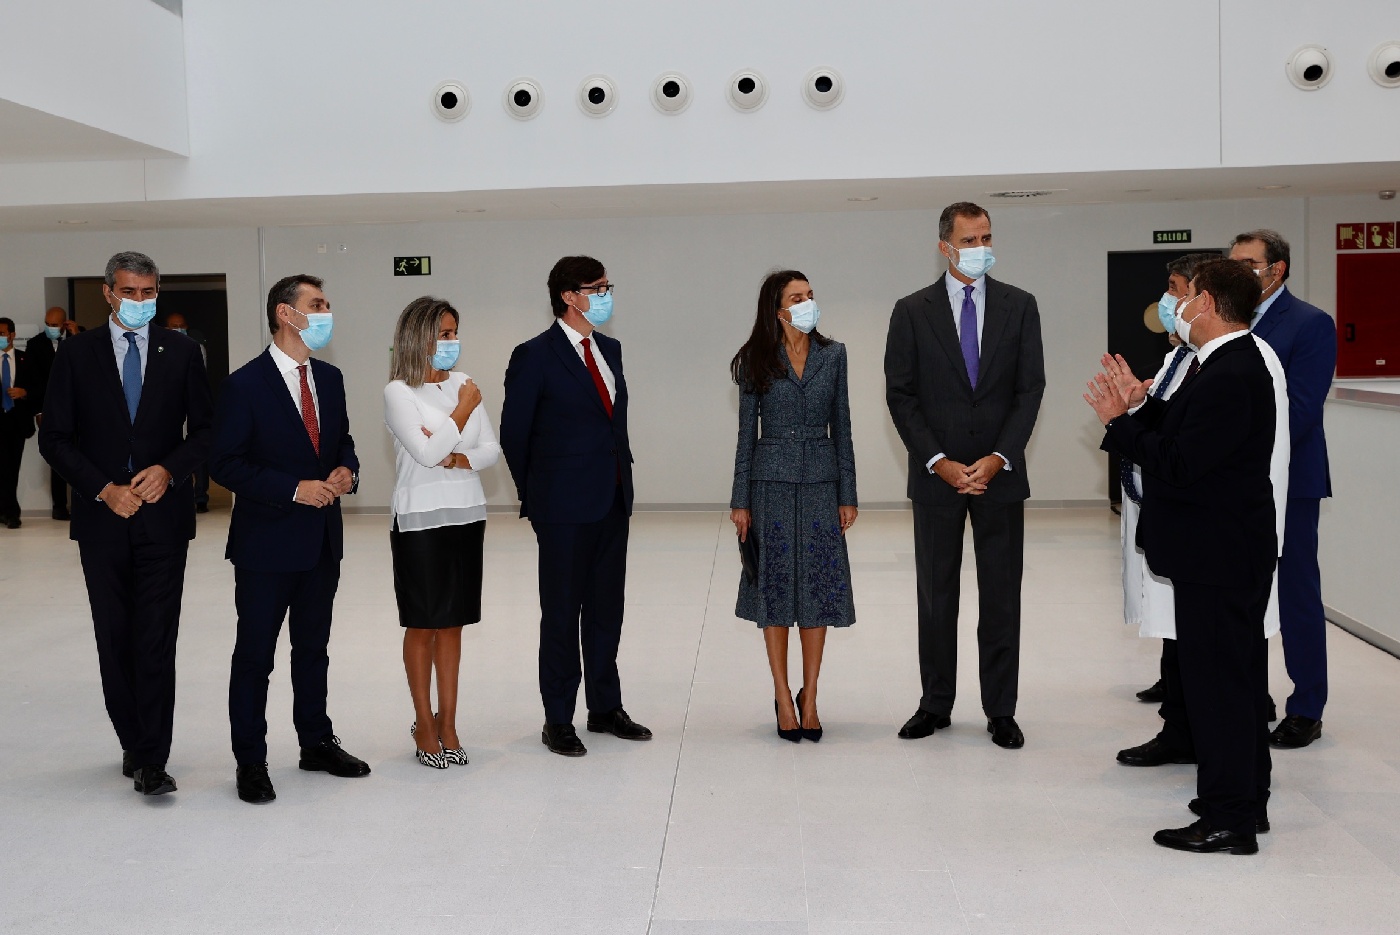 La reina Letizia inicia la semana con uno de sus tejidos favoritos: el tweed